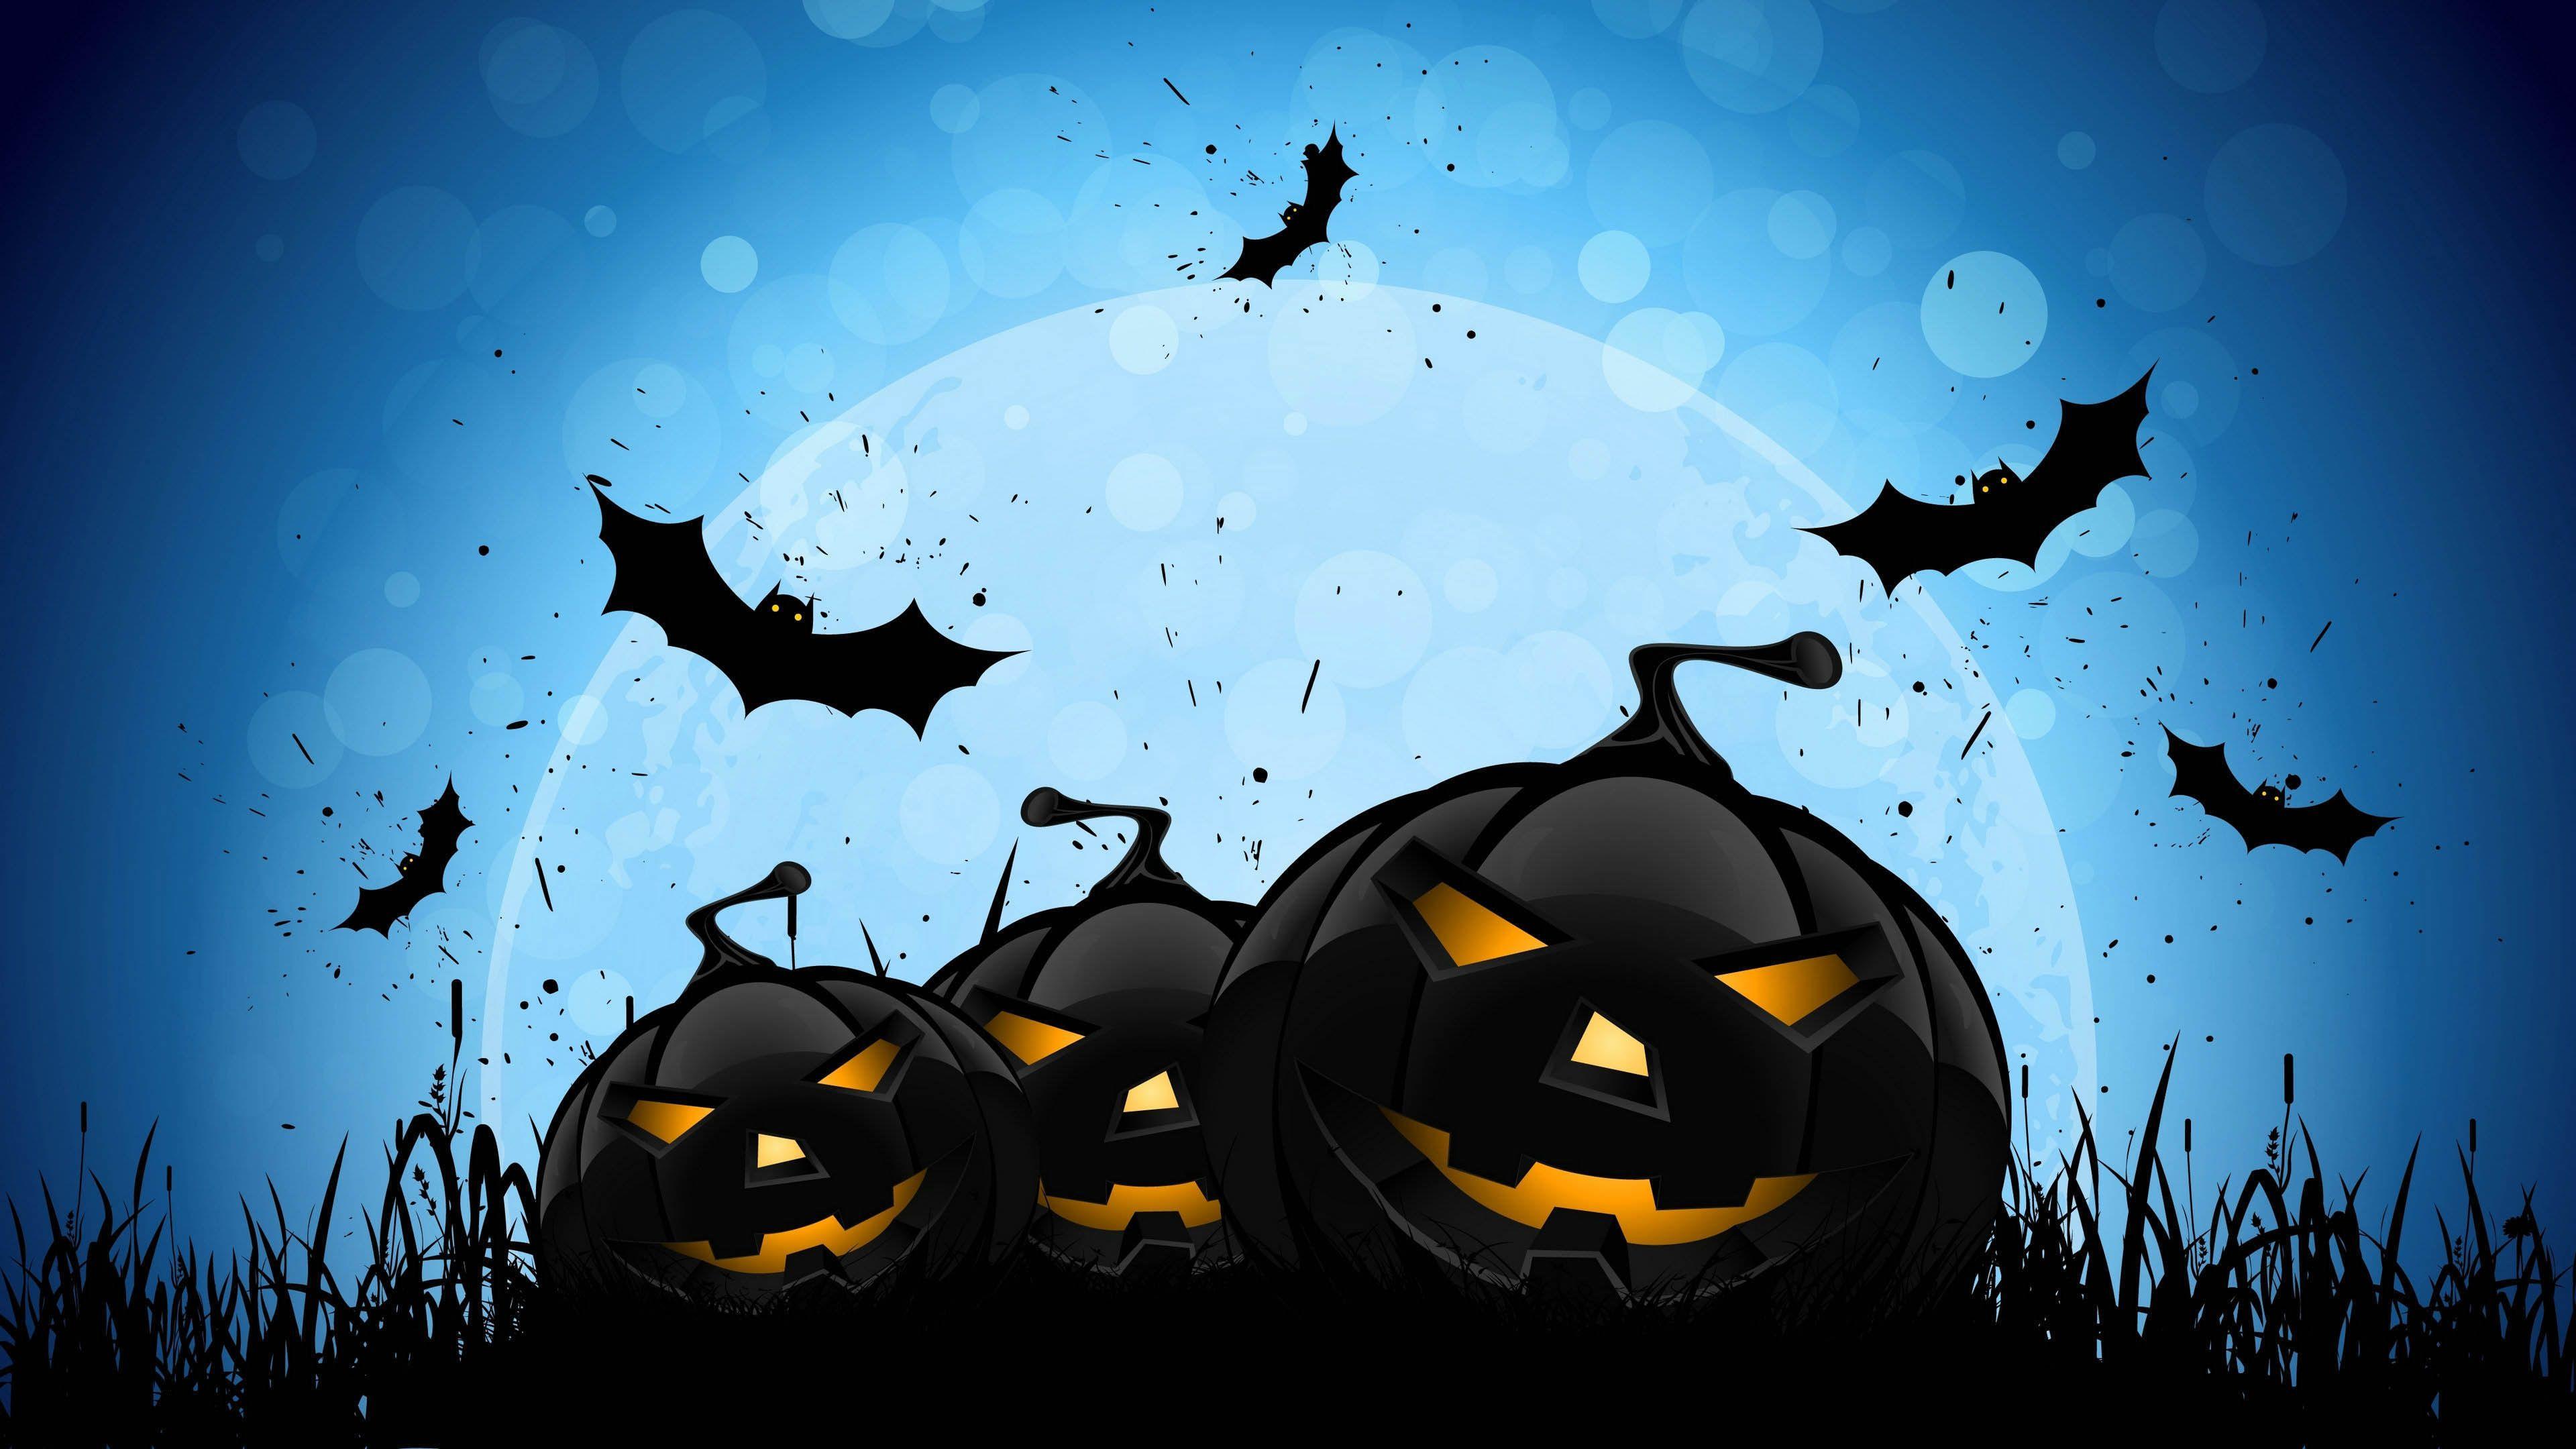 Halloween Pumpkins & Bats 16 9 Ultra HD, UHD